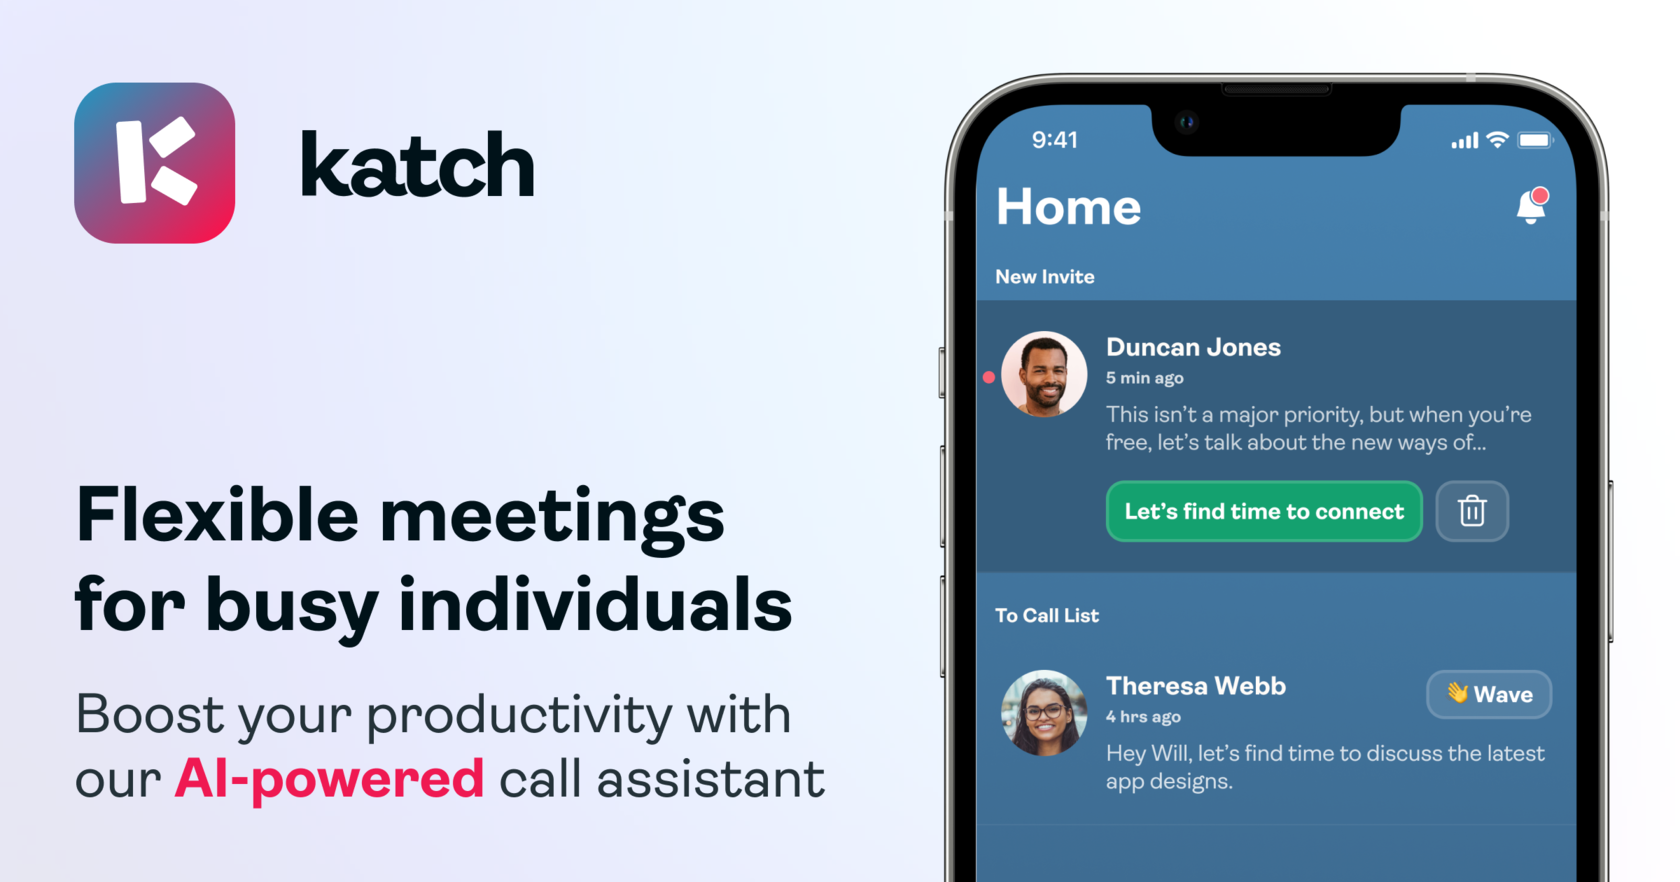 Katch - приложение для ассистента Call Assistant для планирования и суммирования встреч